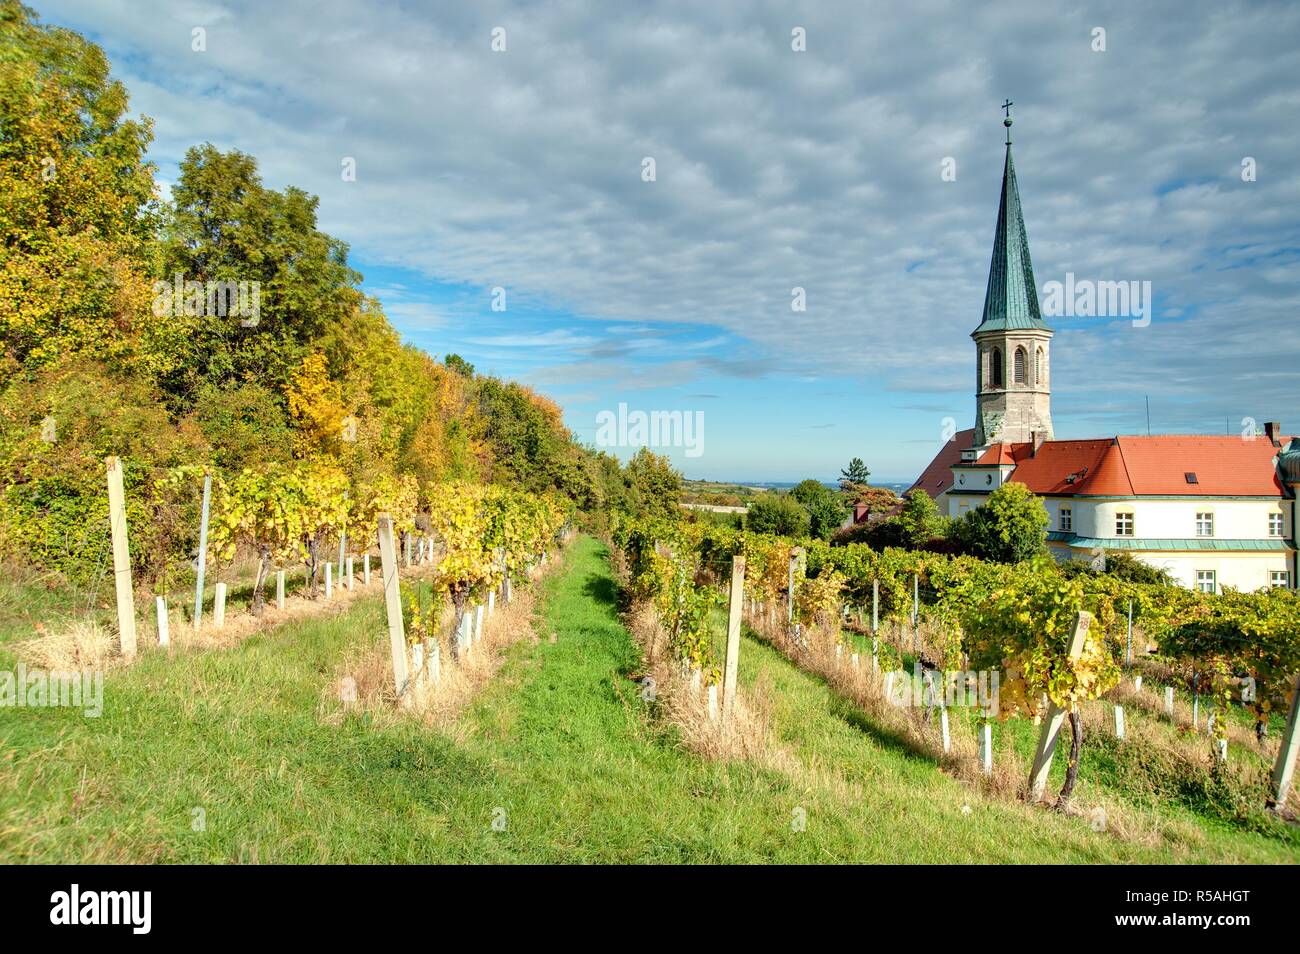 Niederösterreich, Gumpoldskirchen - Austria, Gumpoldskirchen Stock Photo